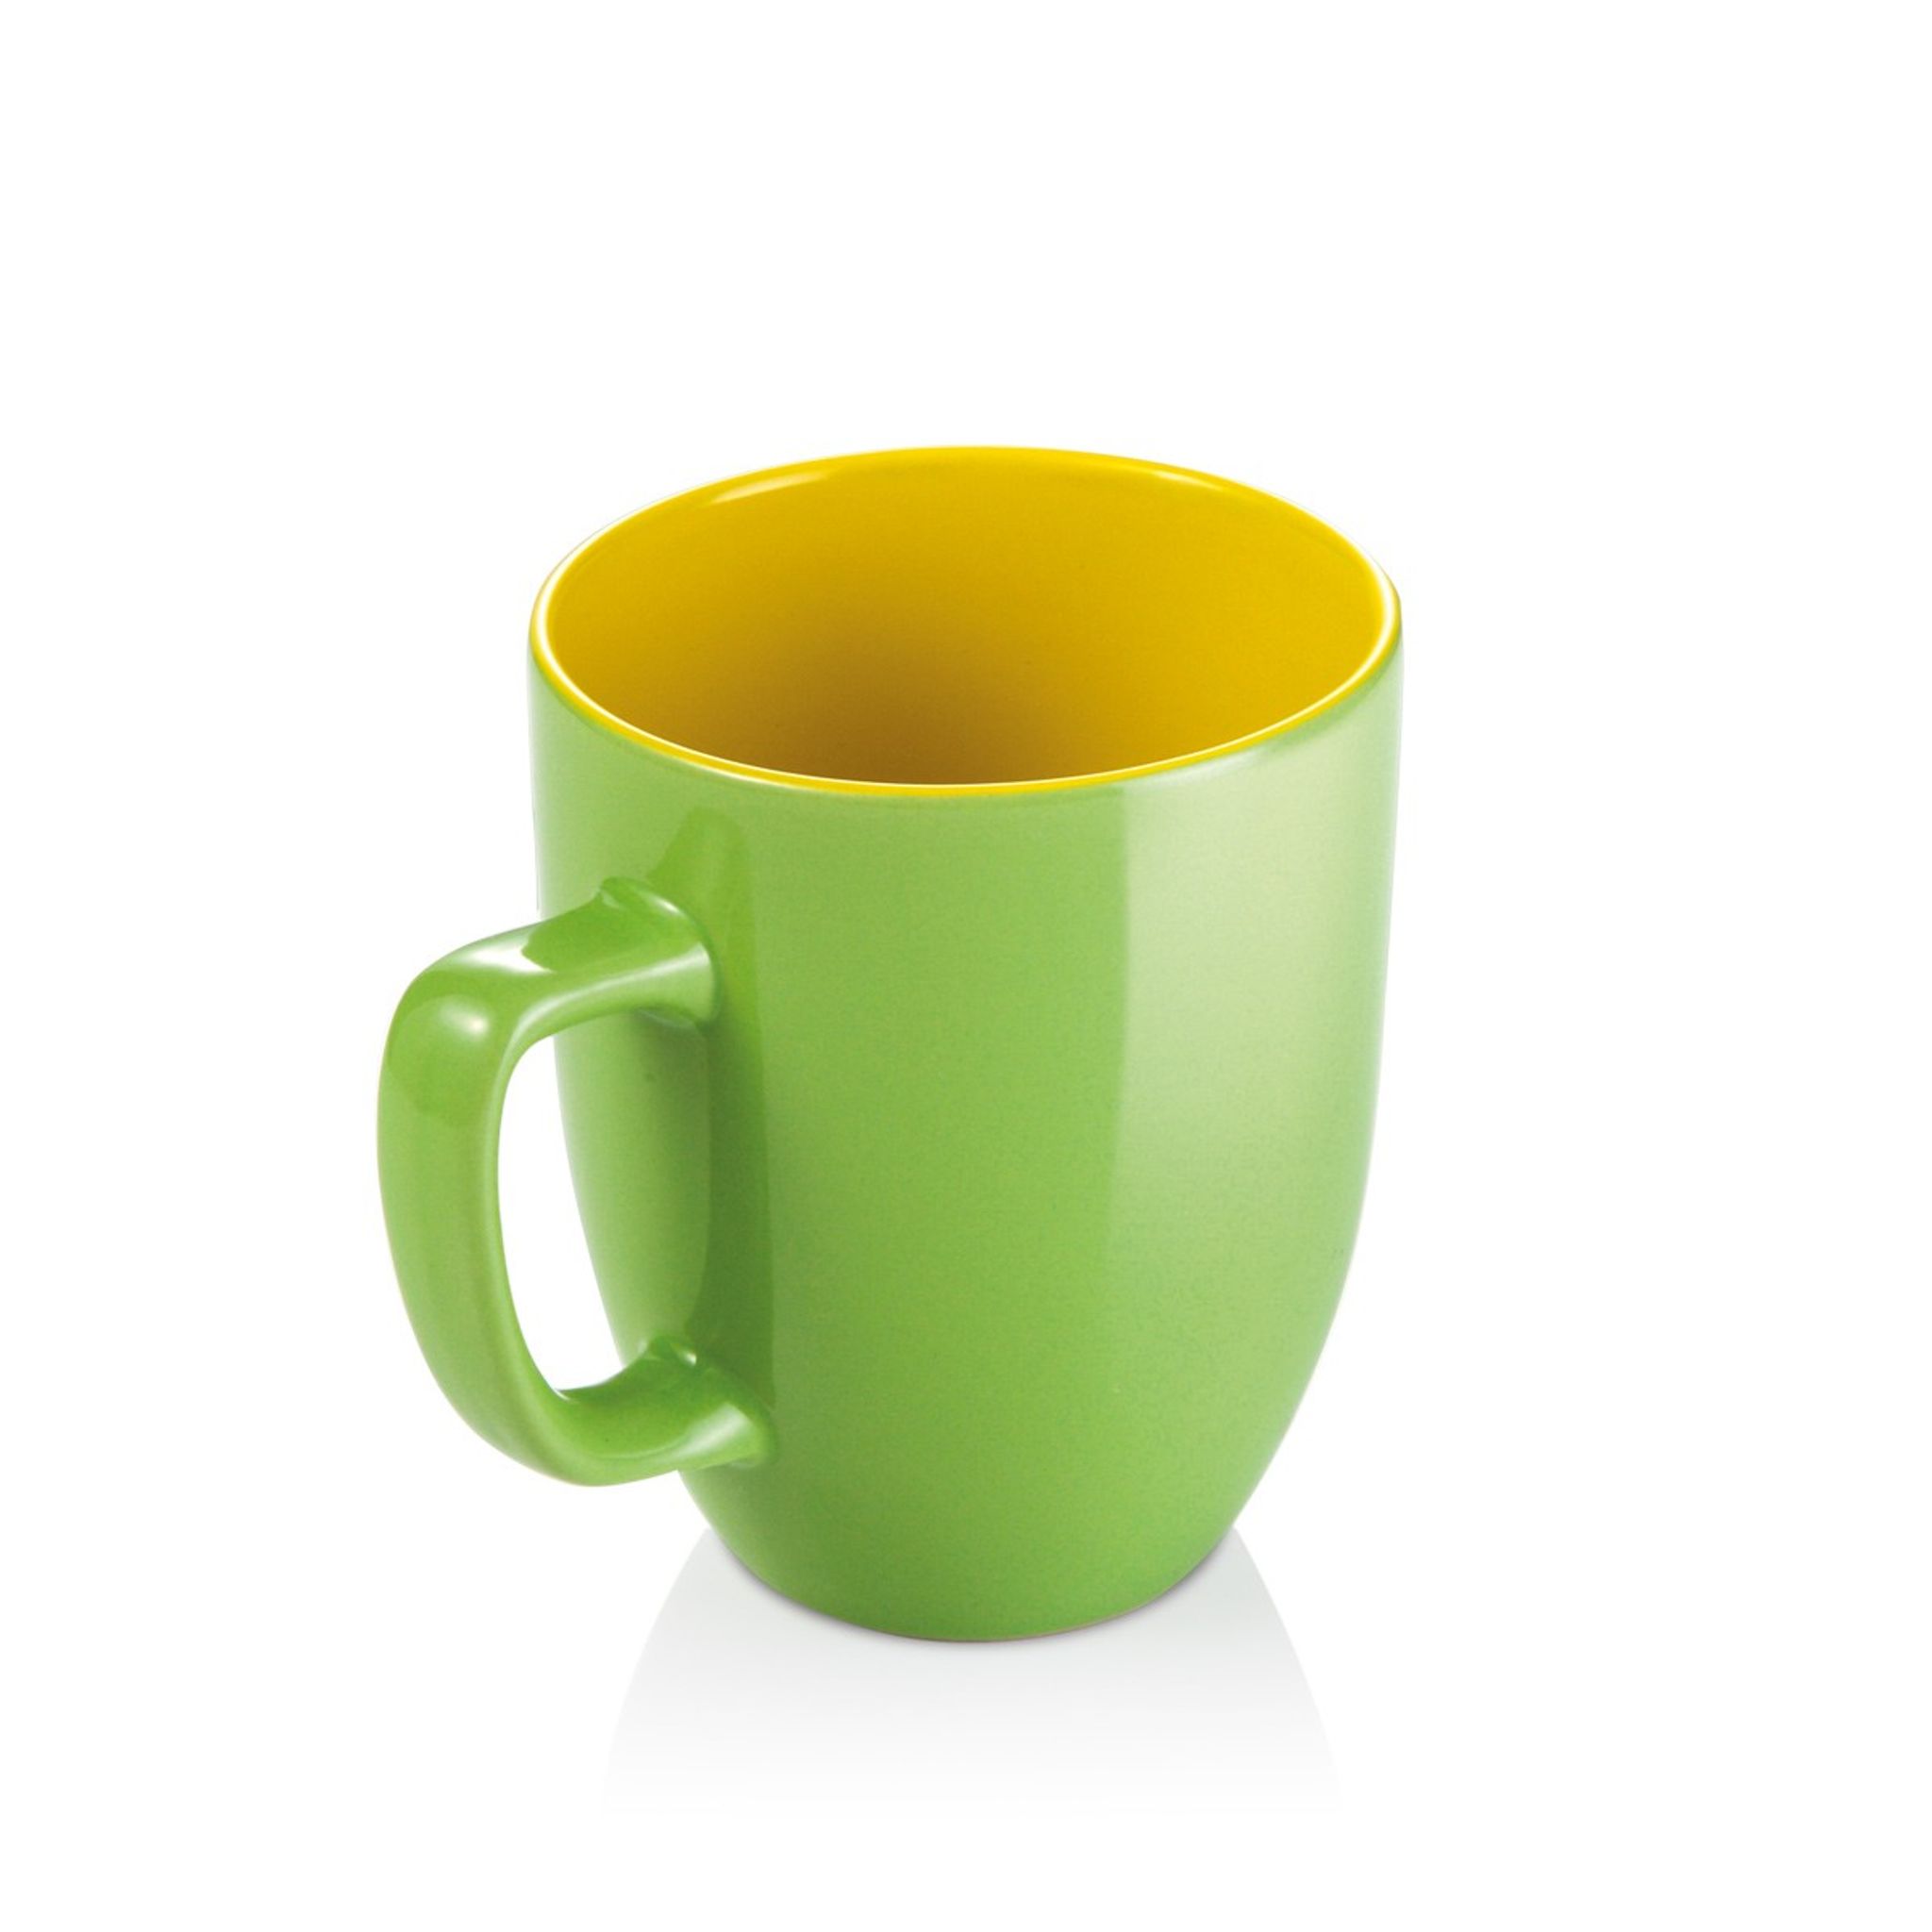 Mug CREMA SHINE, green